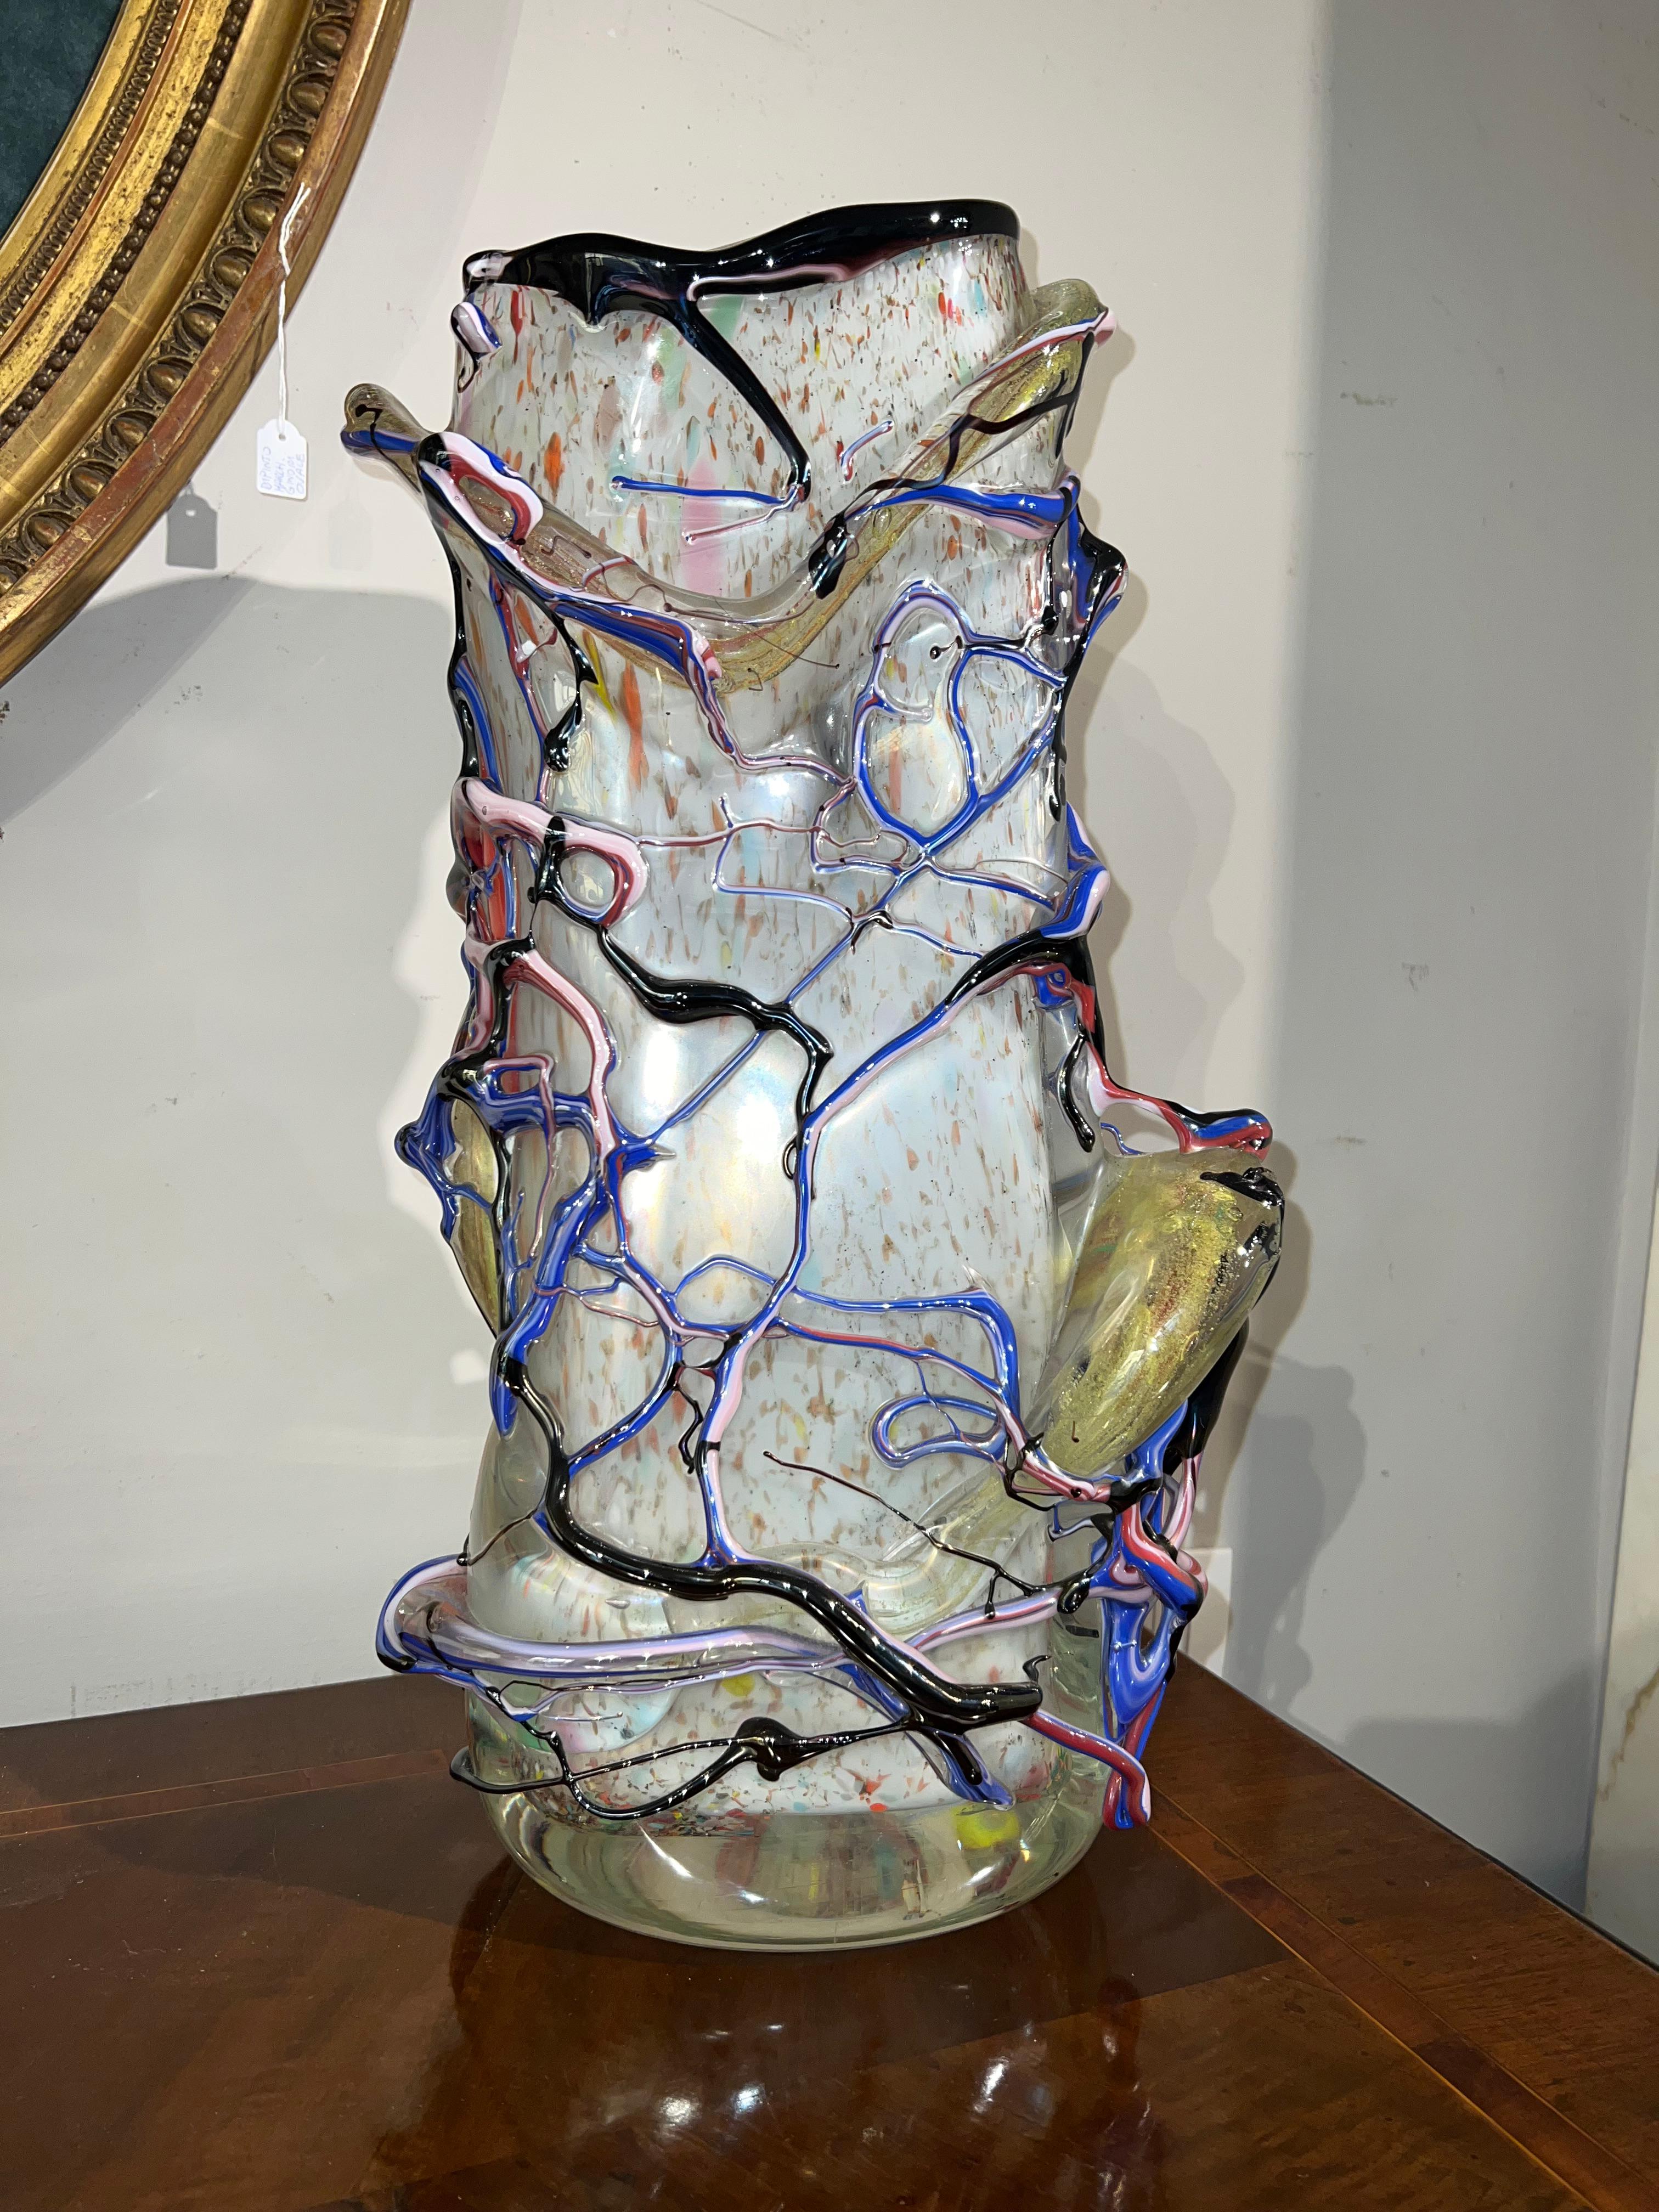 Magnifique et unique vase en verre de Murano. Ce vase a été réalisé avec talent, en utilisant du verre laiteux pour l'intérieur et une structure de branches filiformes polychromes pour l'extérieur. Les décorations en verre coloré polychrome